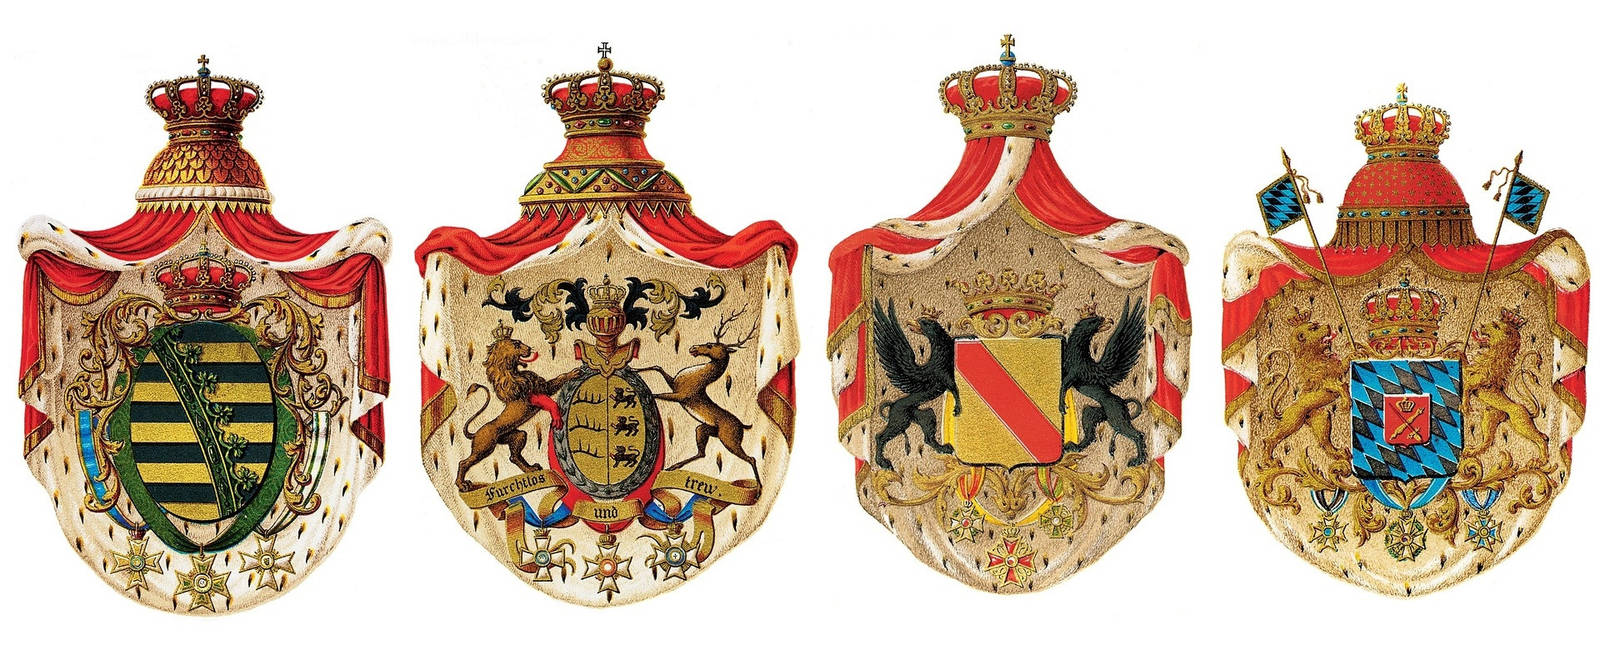 Wappen im Mittelalter waren oft sehr detailreich und prunkvoll.